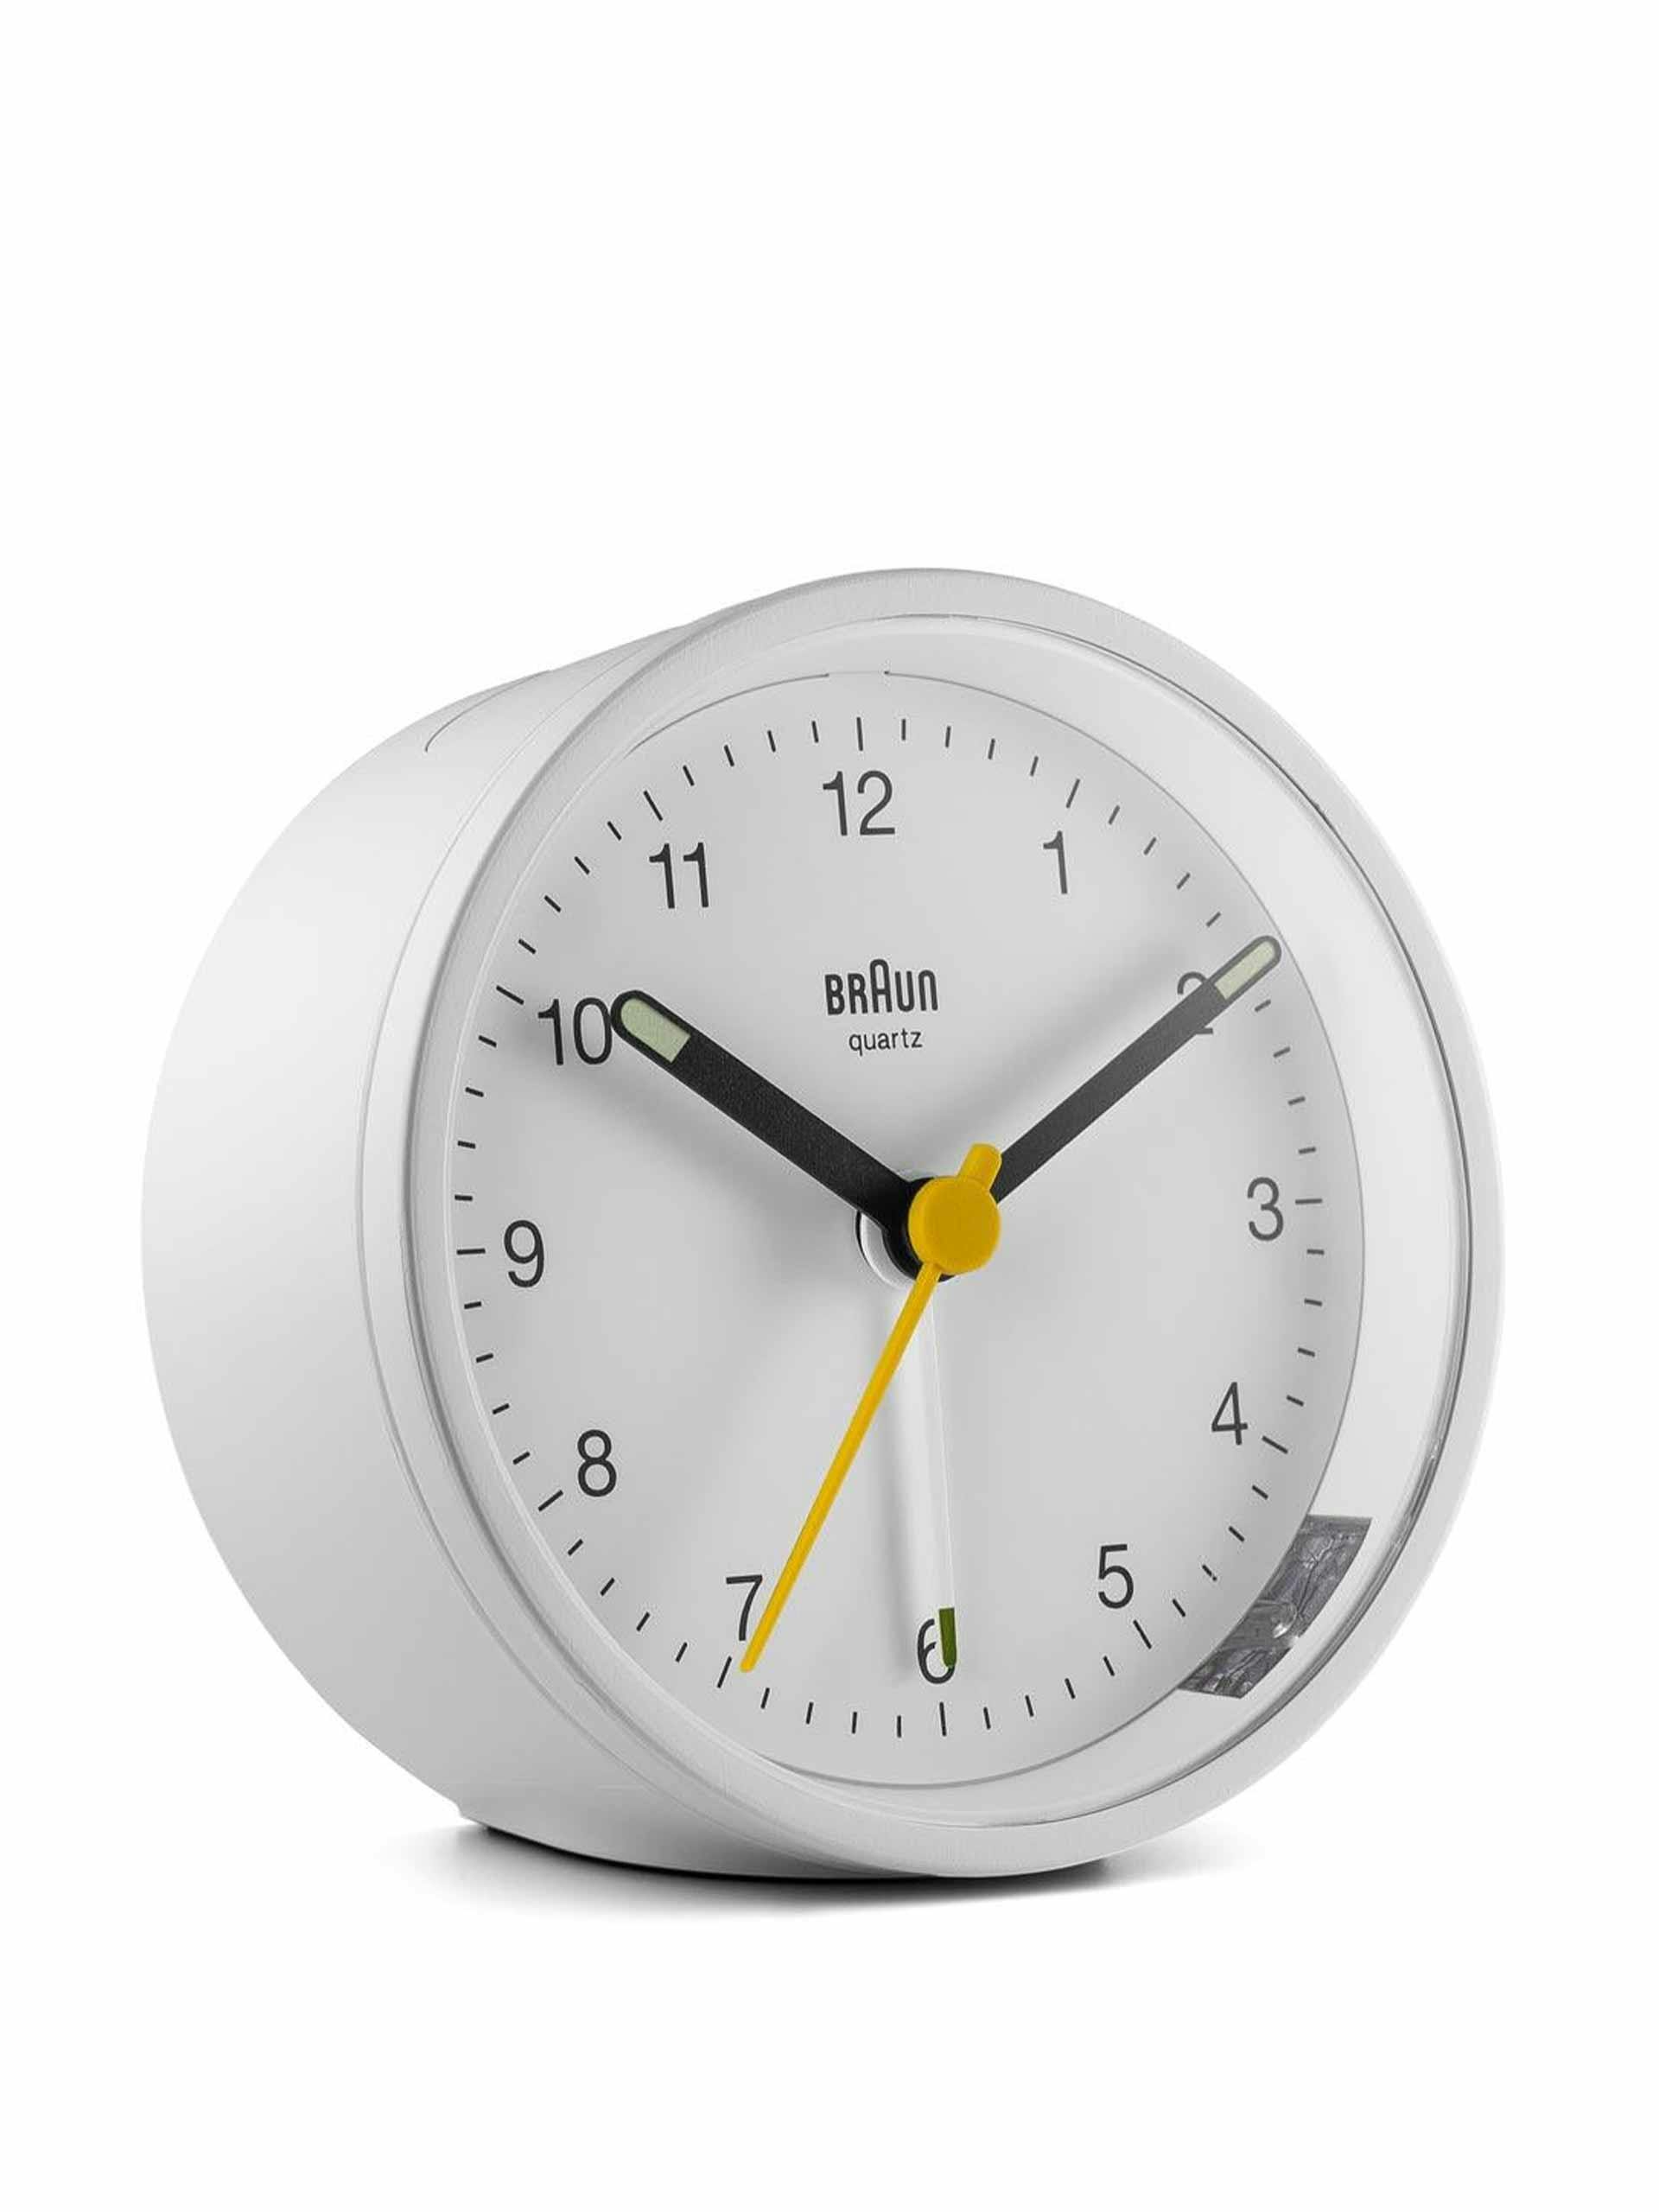 White classic alarm clock